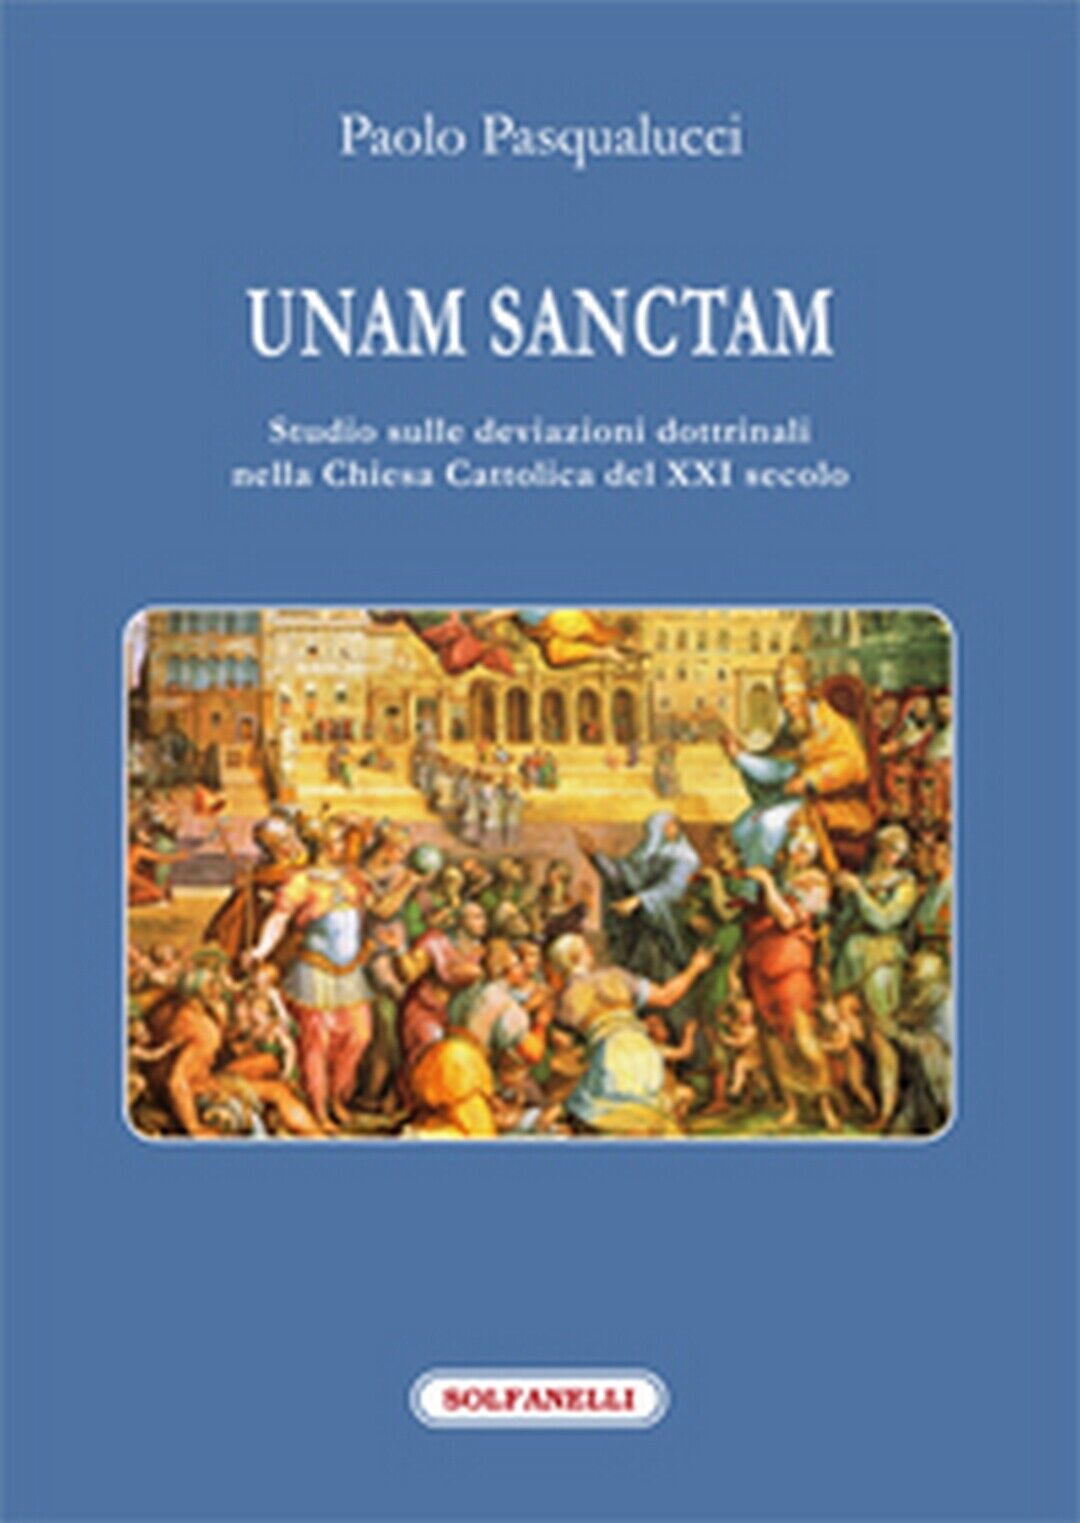 UNAM SANCTAM  di Paolo Pasqualucci,  Solfanelli Edizioni